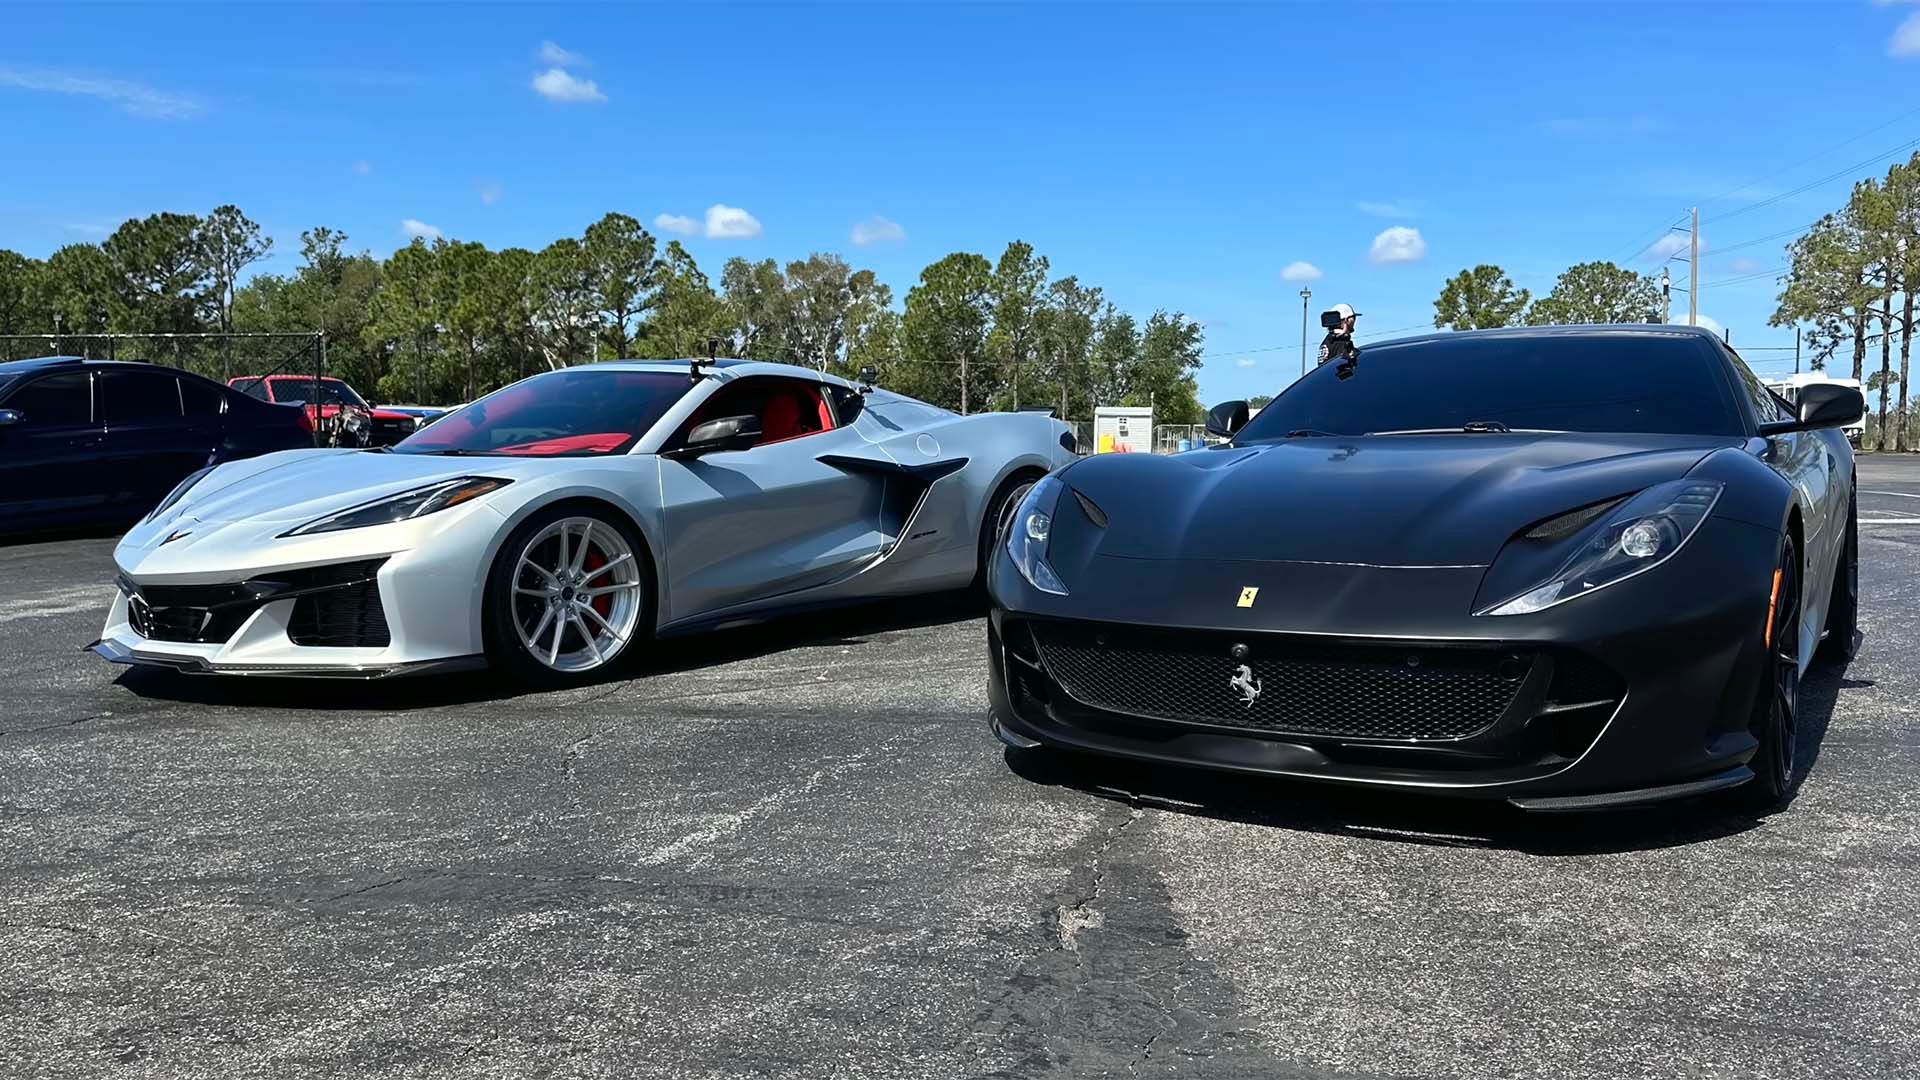 (Left-to-right) Chevrolet Corvette Z06 and Ferrari 812 Superfast